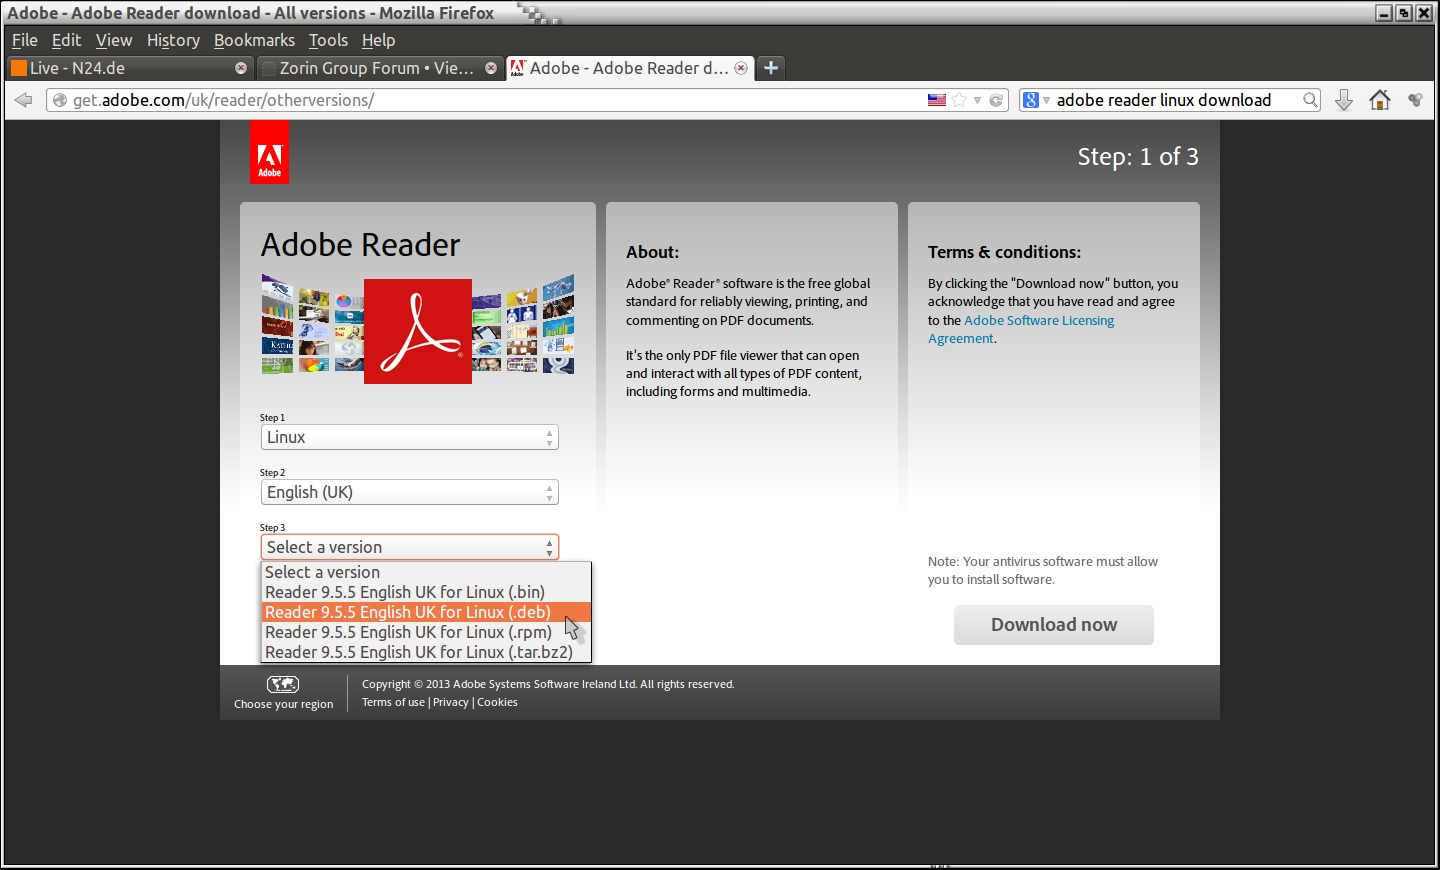 Adobe - Adobe Reader download - All versions - Mozilla Firefox_002.jpg